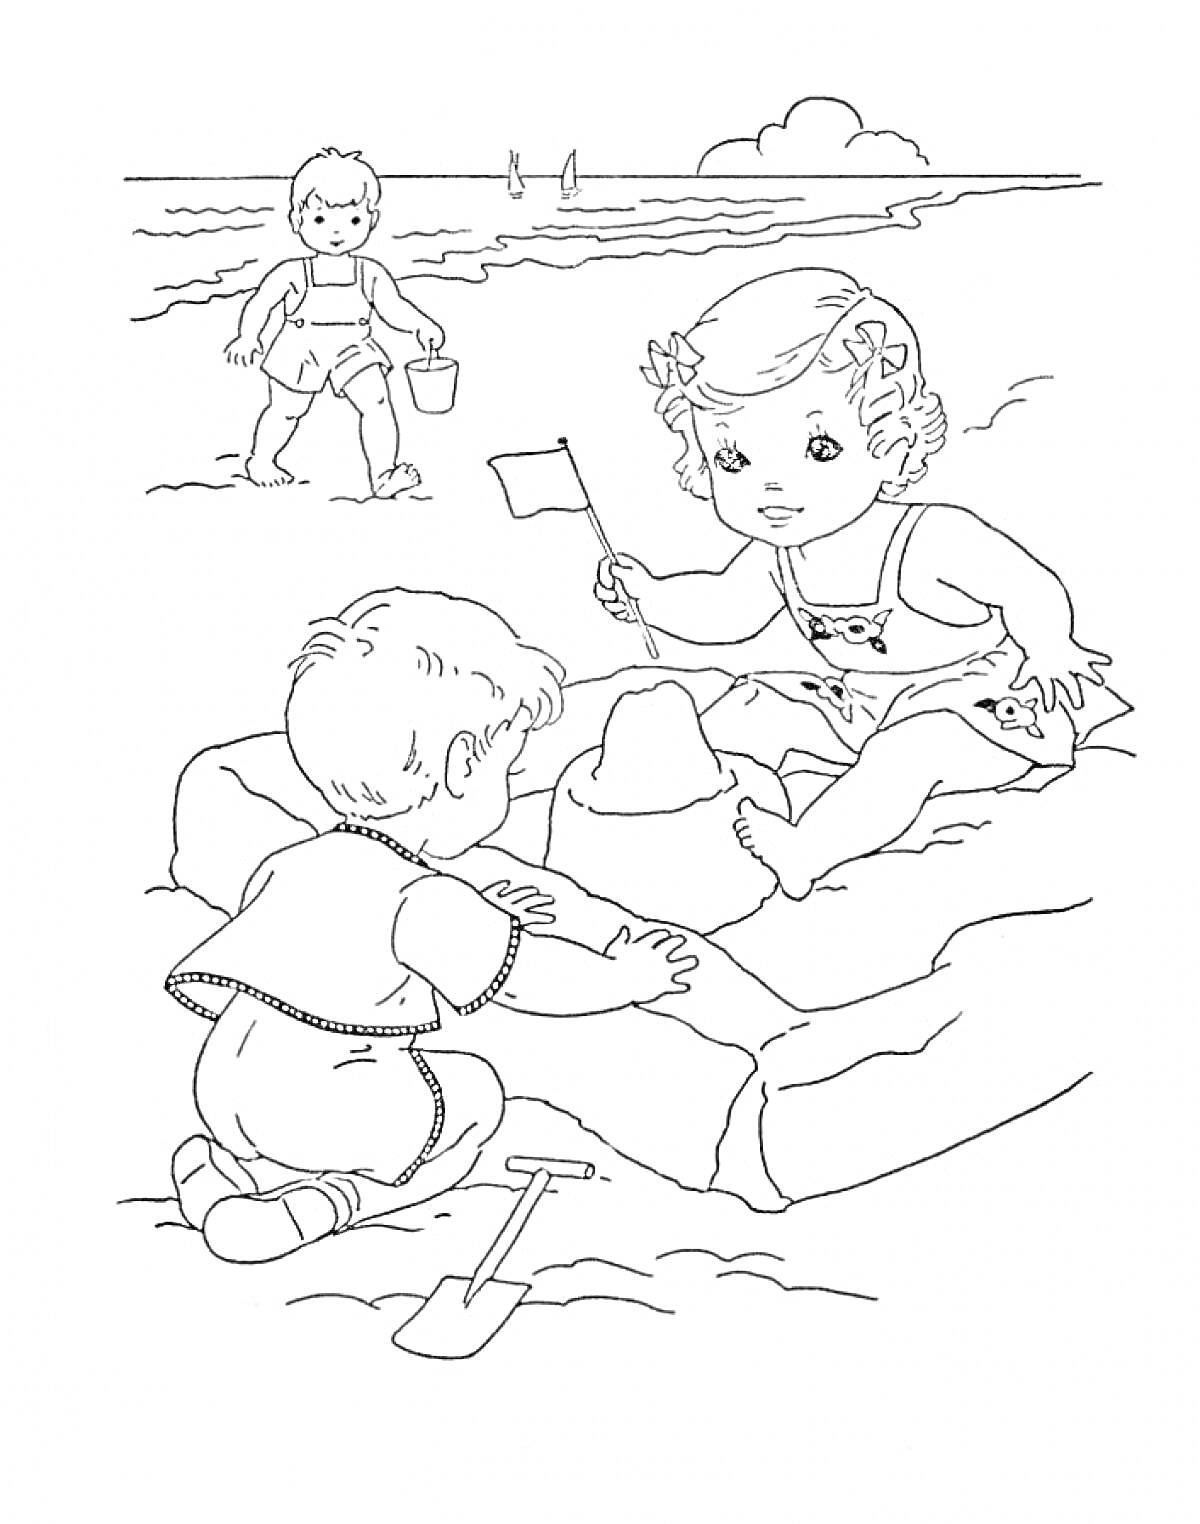 Дети на пляже строят песочный замок, третий ребёнок идет с ведром